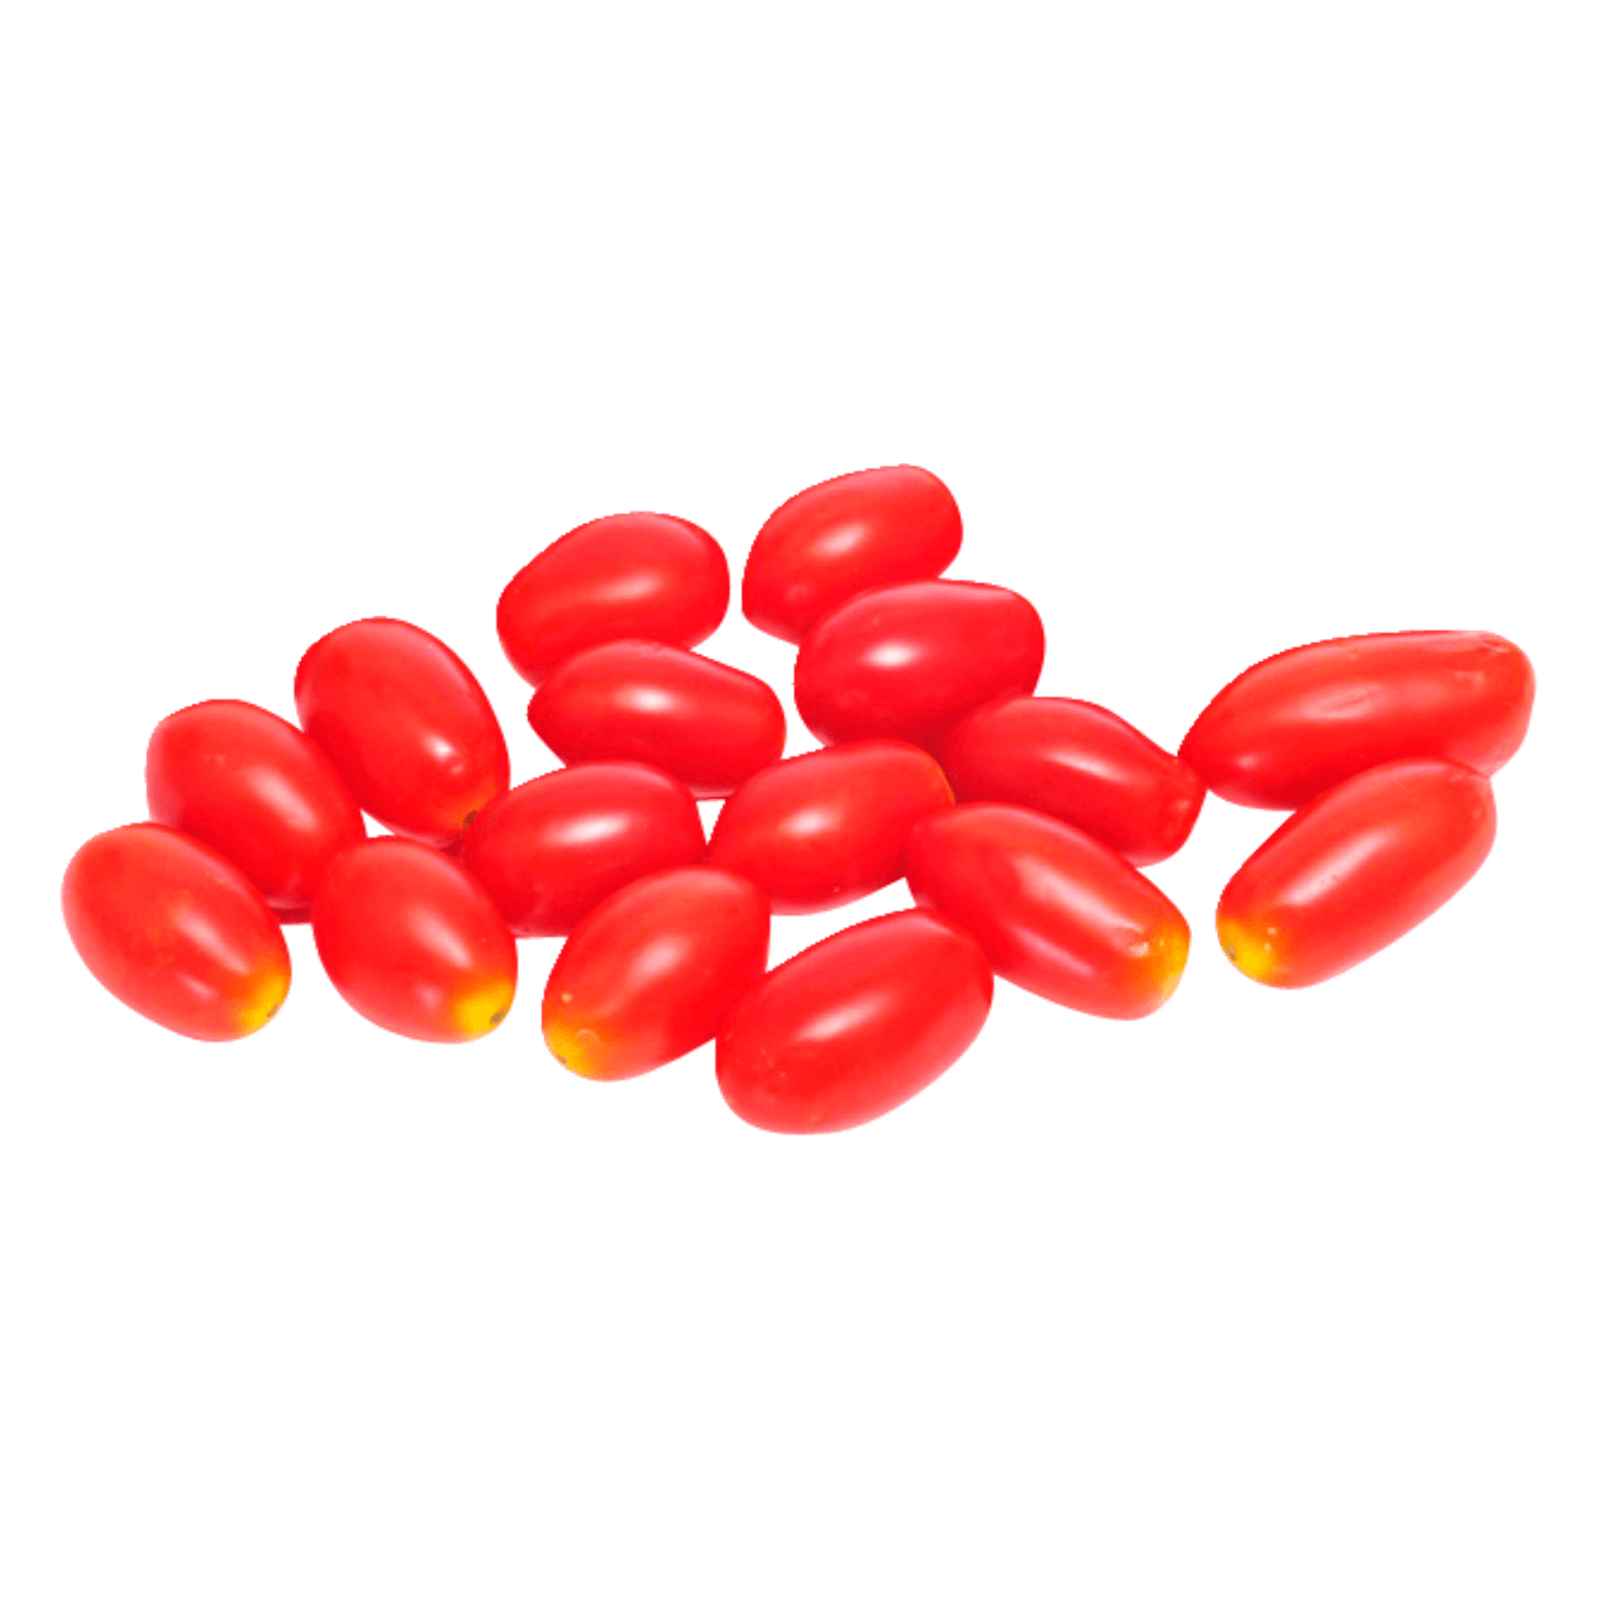 Cherry Romatomaten 250g bei REWE online bestellen